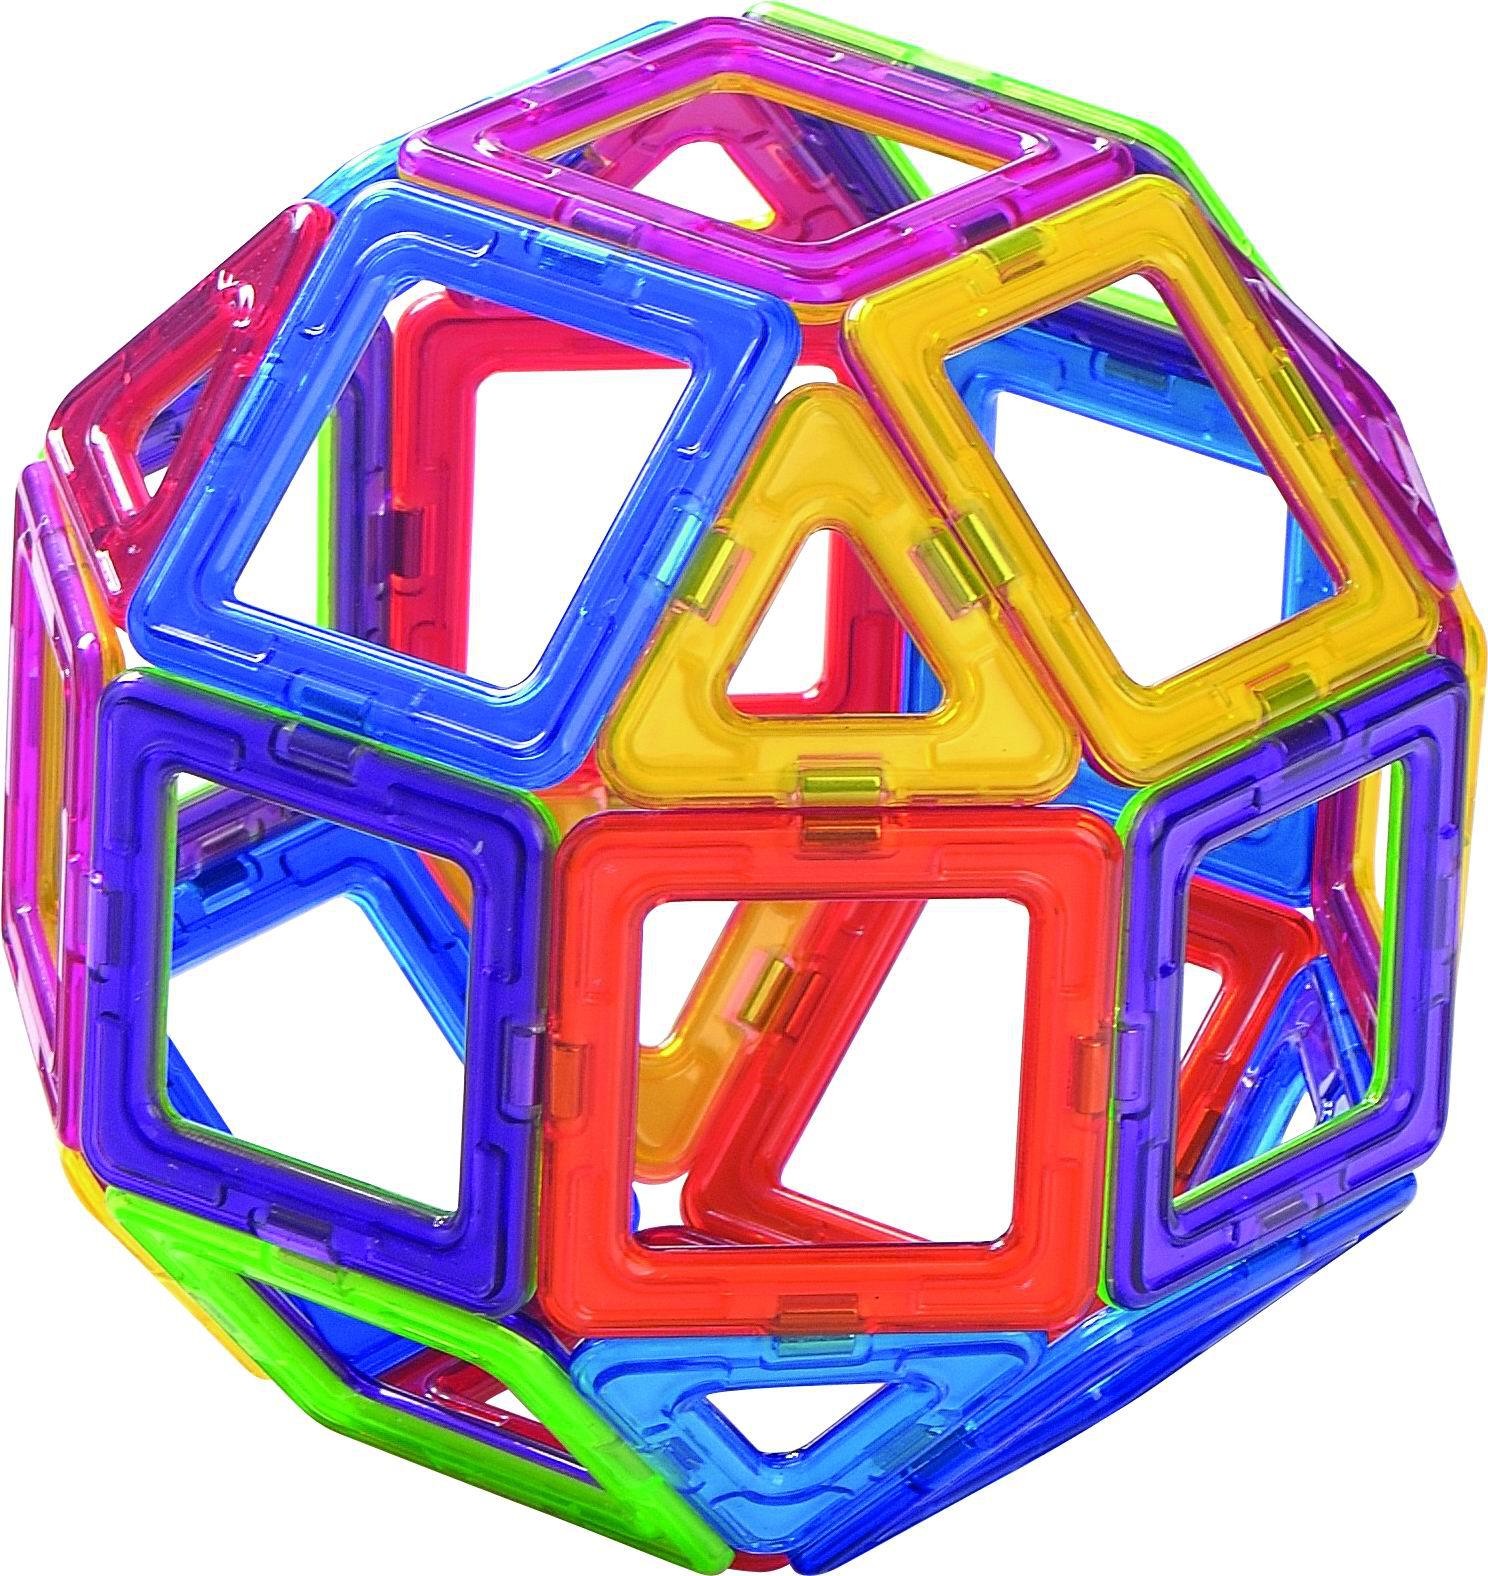 磁力片益智玩具 拼装构建积木正放形     逻辑认知   培养形状组合